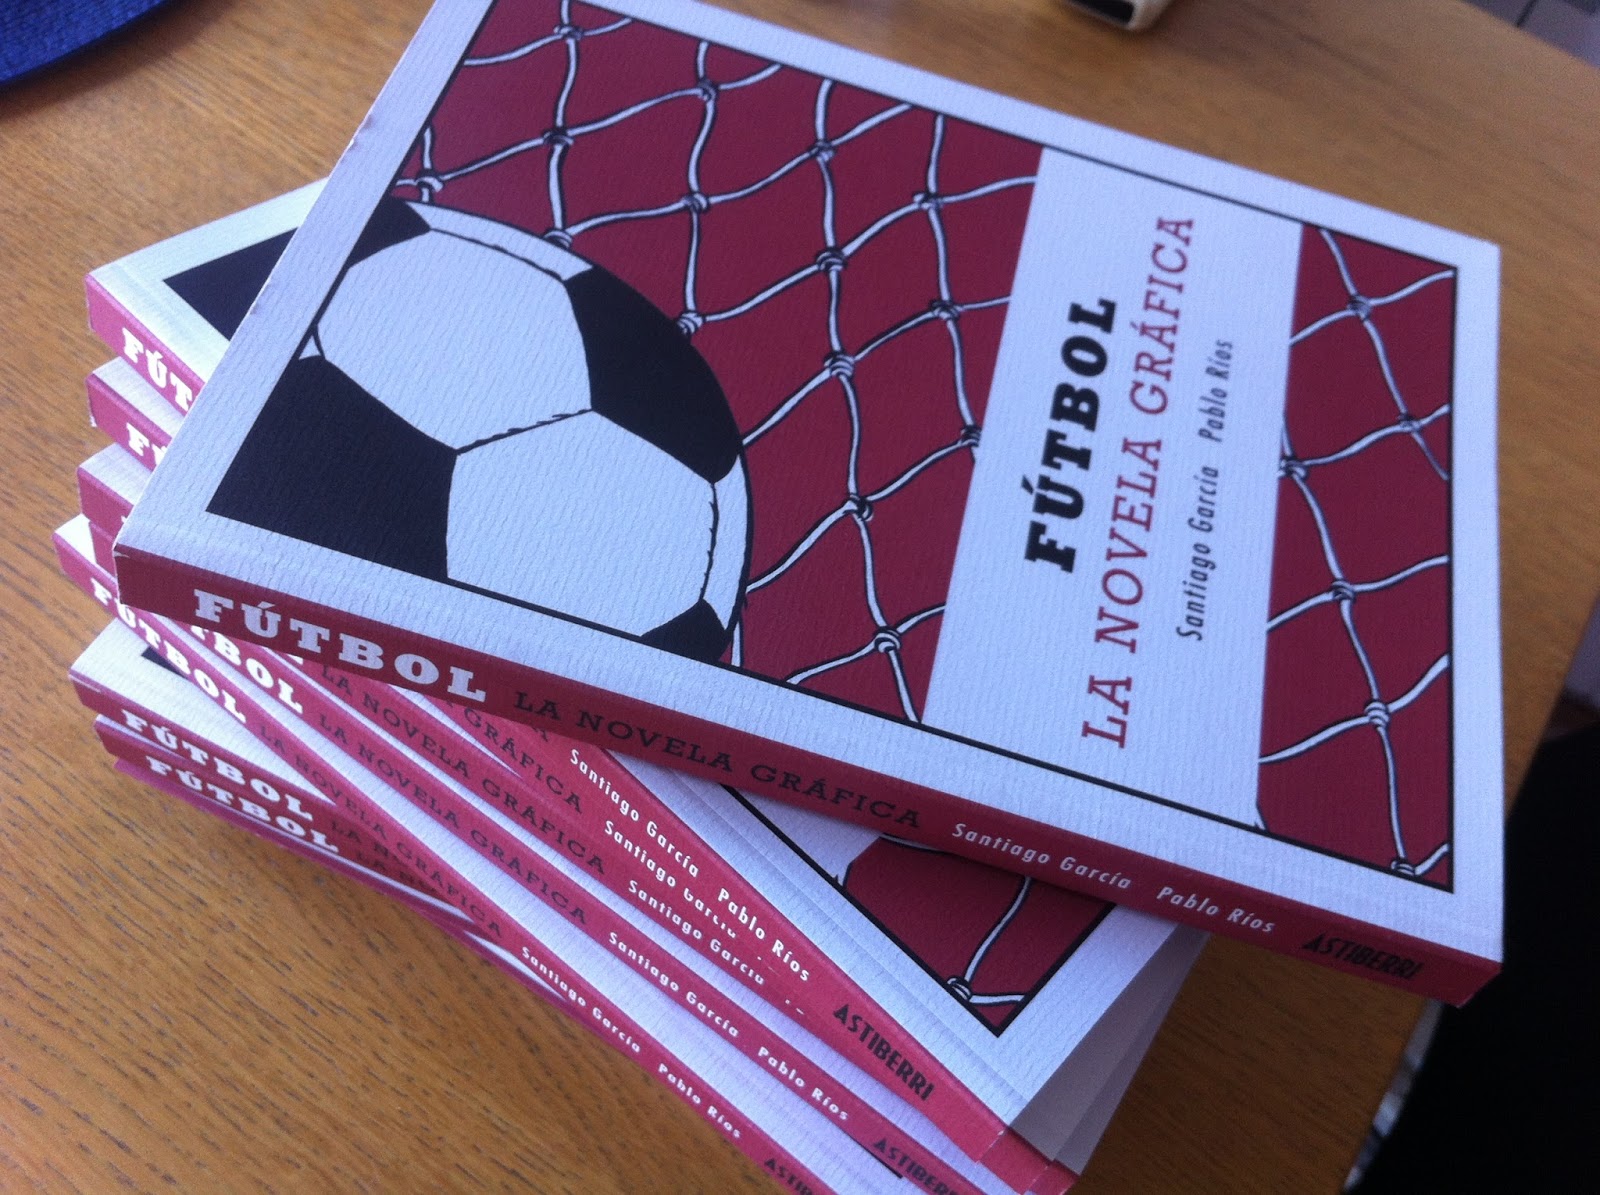 Fútbol: La Novela Gráfica